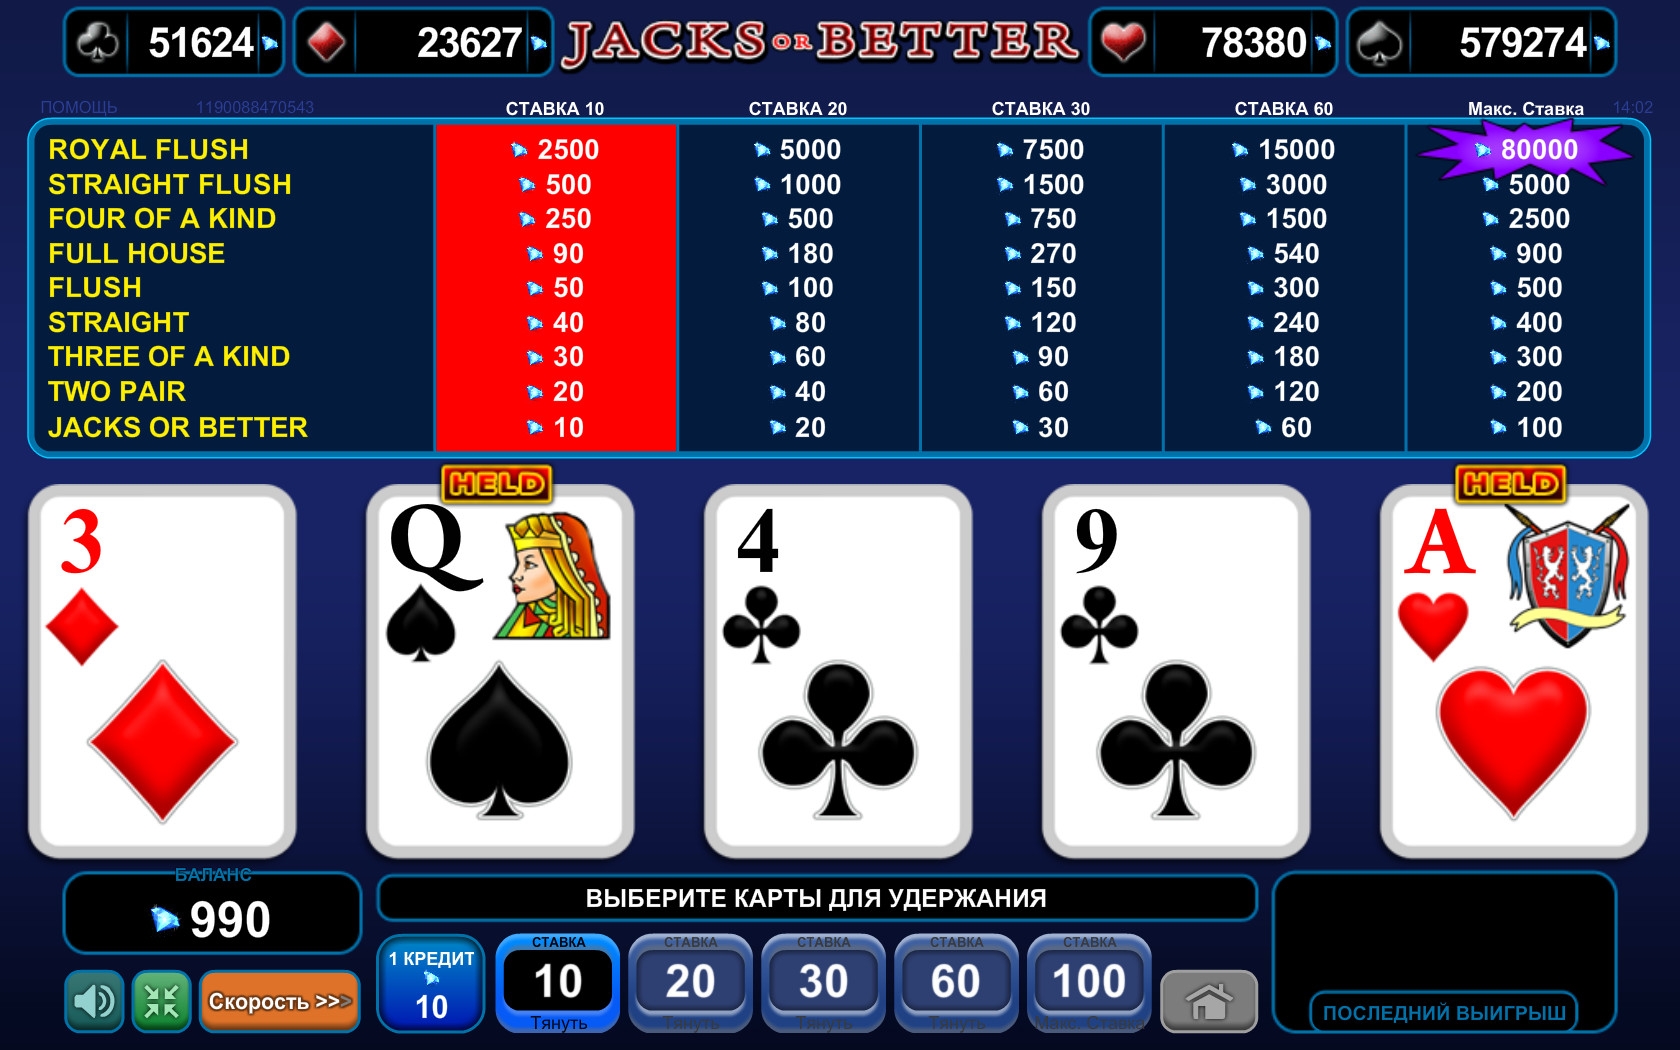 Jacks or Better (Jacks or Better) from category Video Poker